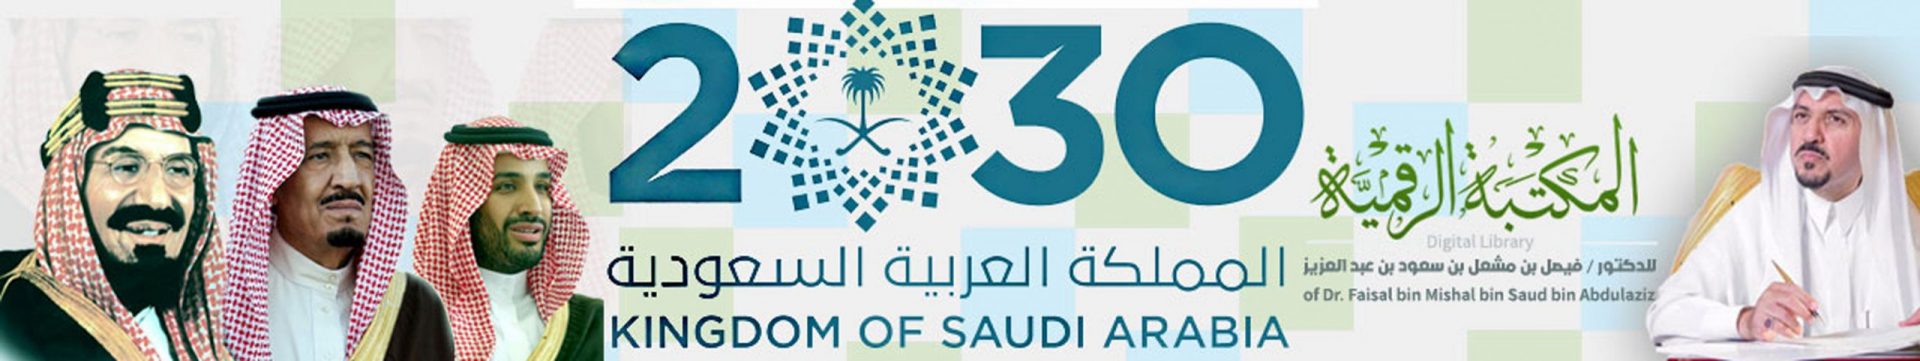 مختصر تاريخ الدولة السعودية المكتبة الرقمية للدكتور فيصل بن مشعل بن سعود بن عبدالعزيز